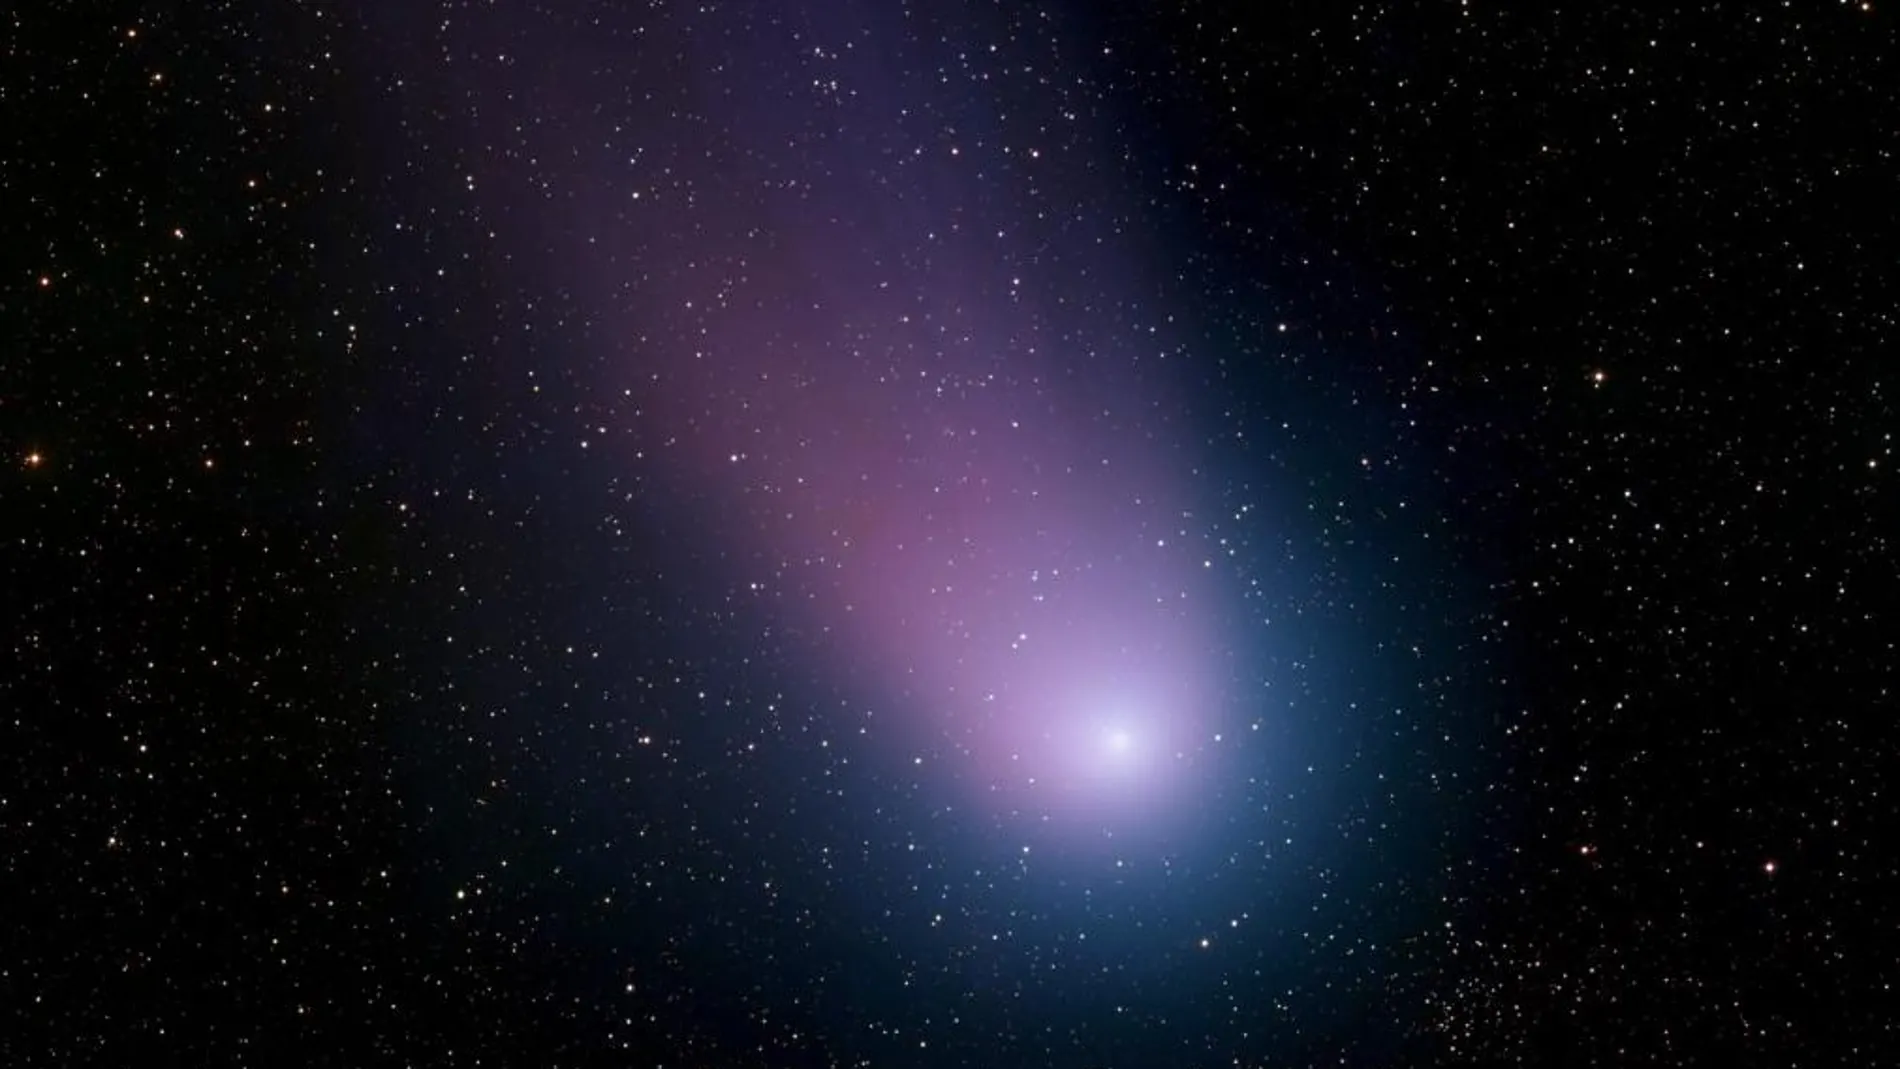 otografía del cometa C/2001 Q4 (NEAT) tomada el 7 de mayo de 2004 por el telesocpio del Observatorio Nacional Kitt Peak, cerca de Tucson, Arizona,